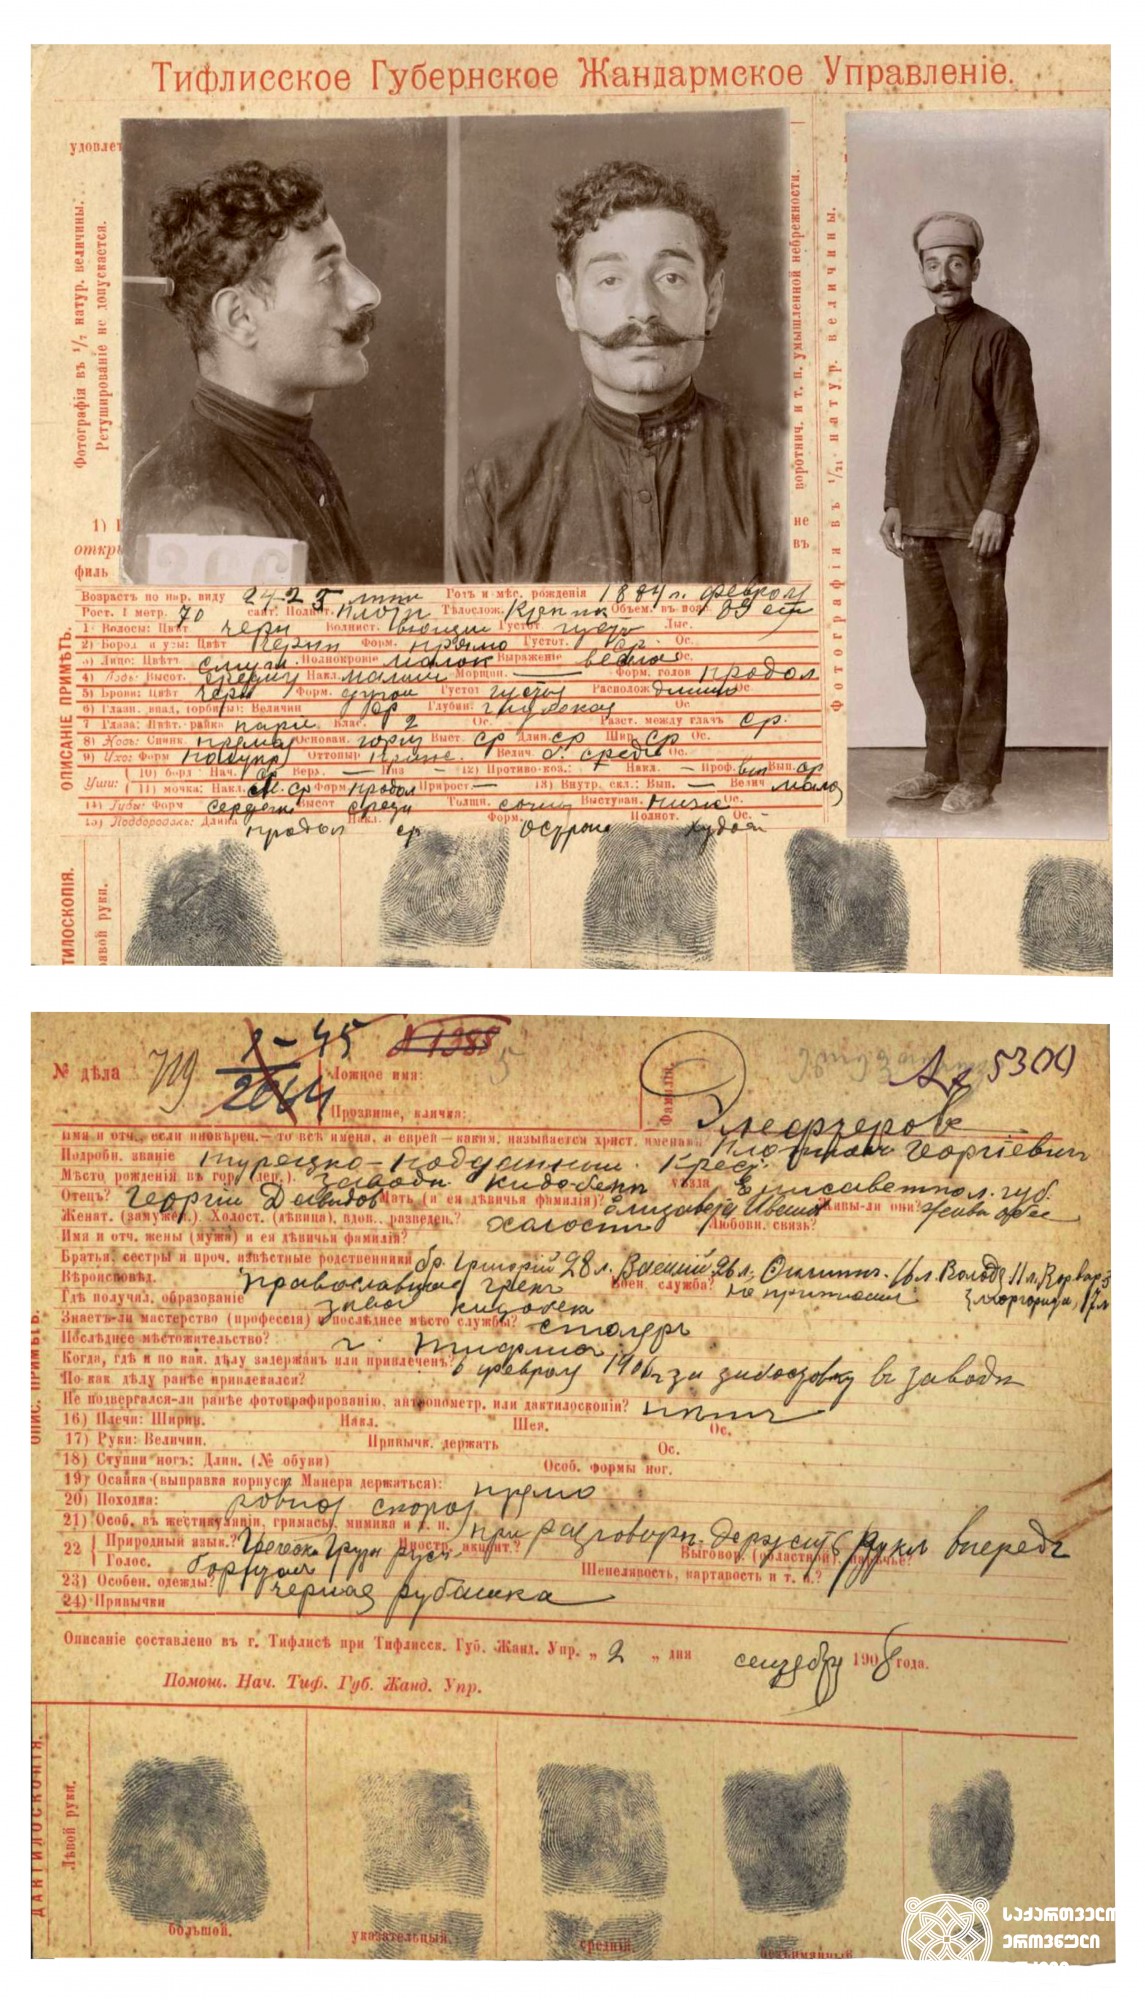 ელეფთეროვი. <br> 
თბილისის გუბერნიის ჟანდარმერიის სამმართველოს ბარათი. <br>
1908 წლის 2 სექტემბერი, თბილისი. <br>
Eleftherov. <br>
Card of the Gendarmerie Division of the Tbilisi Province. <br>
September 2, 1908, Tbilisi.